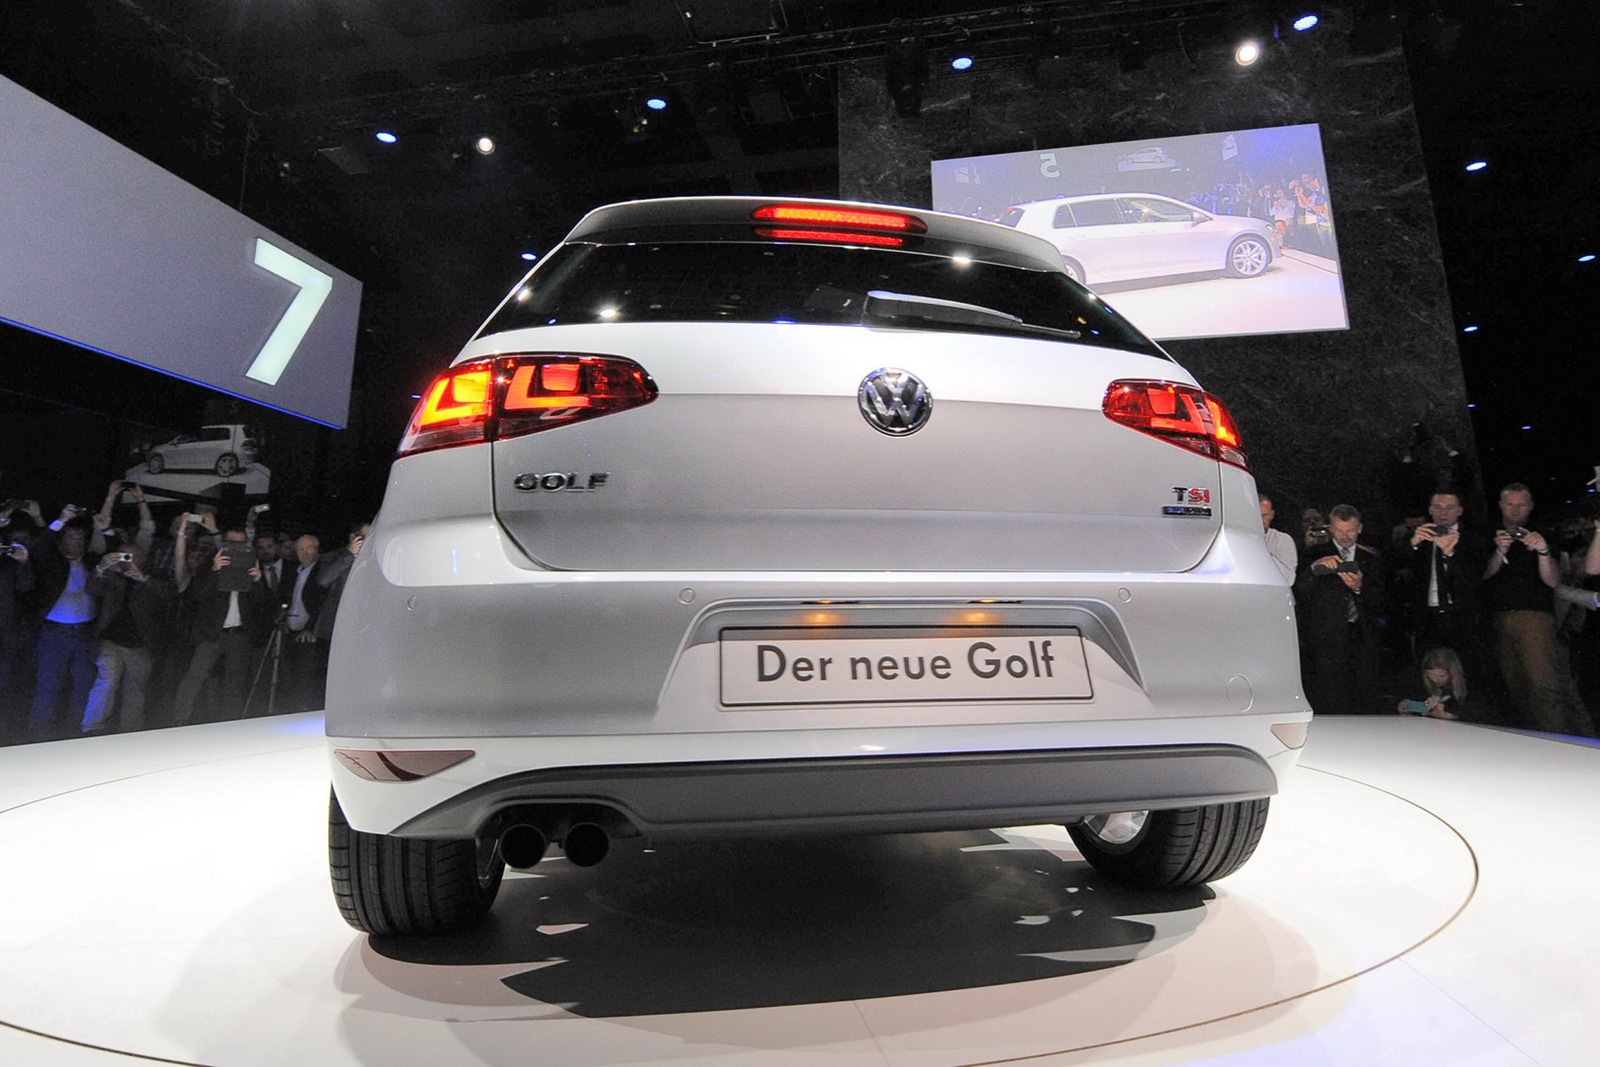 VW-Golf-MK7-6%25255B2%25255D.jpg